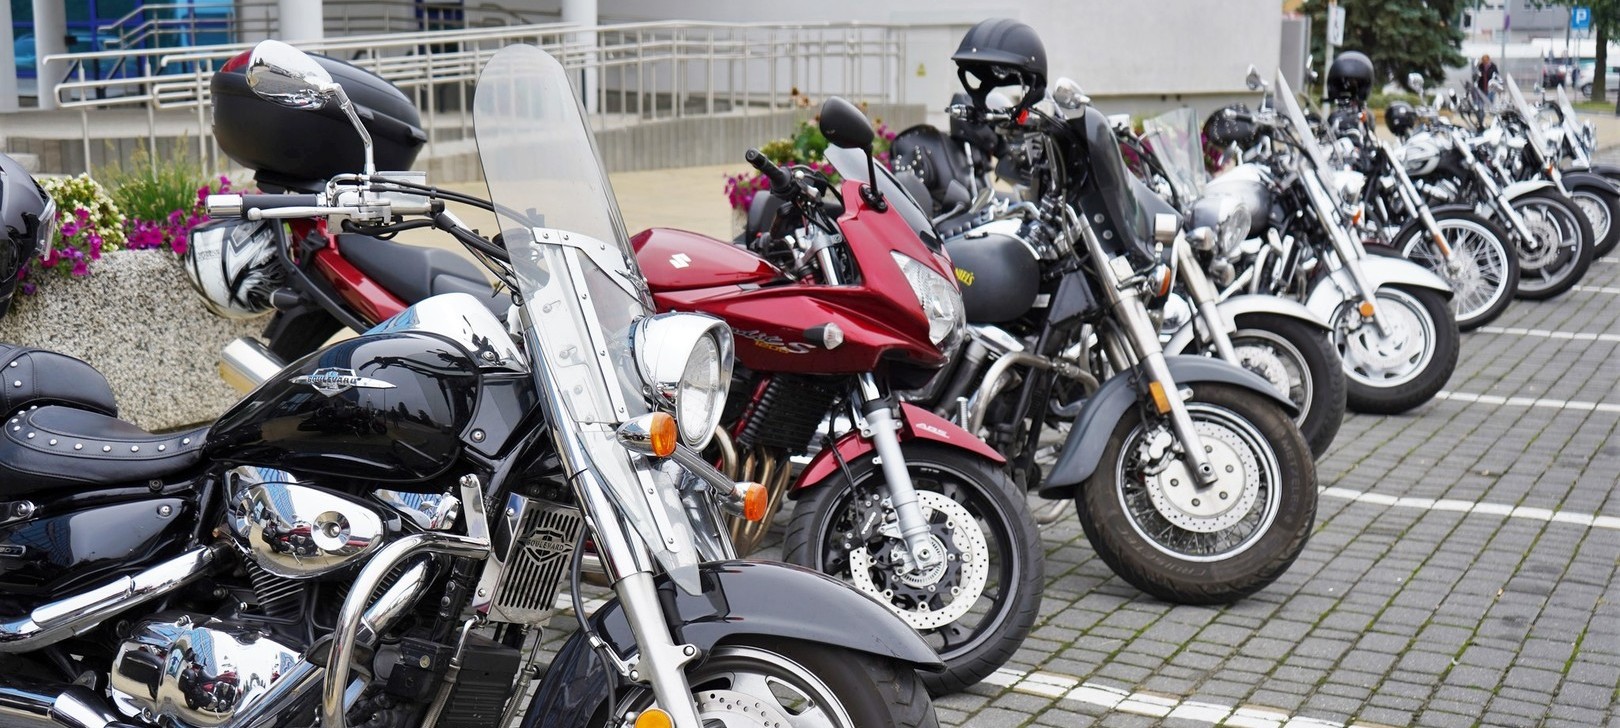 Zdjęcie kilku motocykli stojących na parkingu